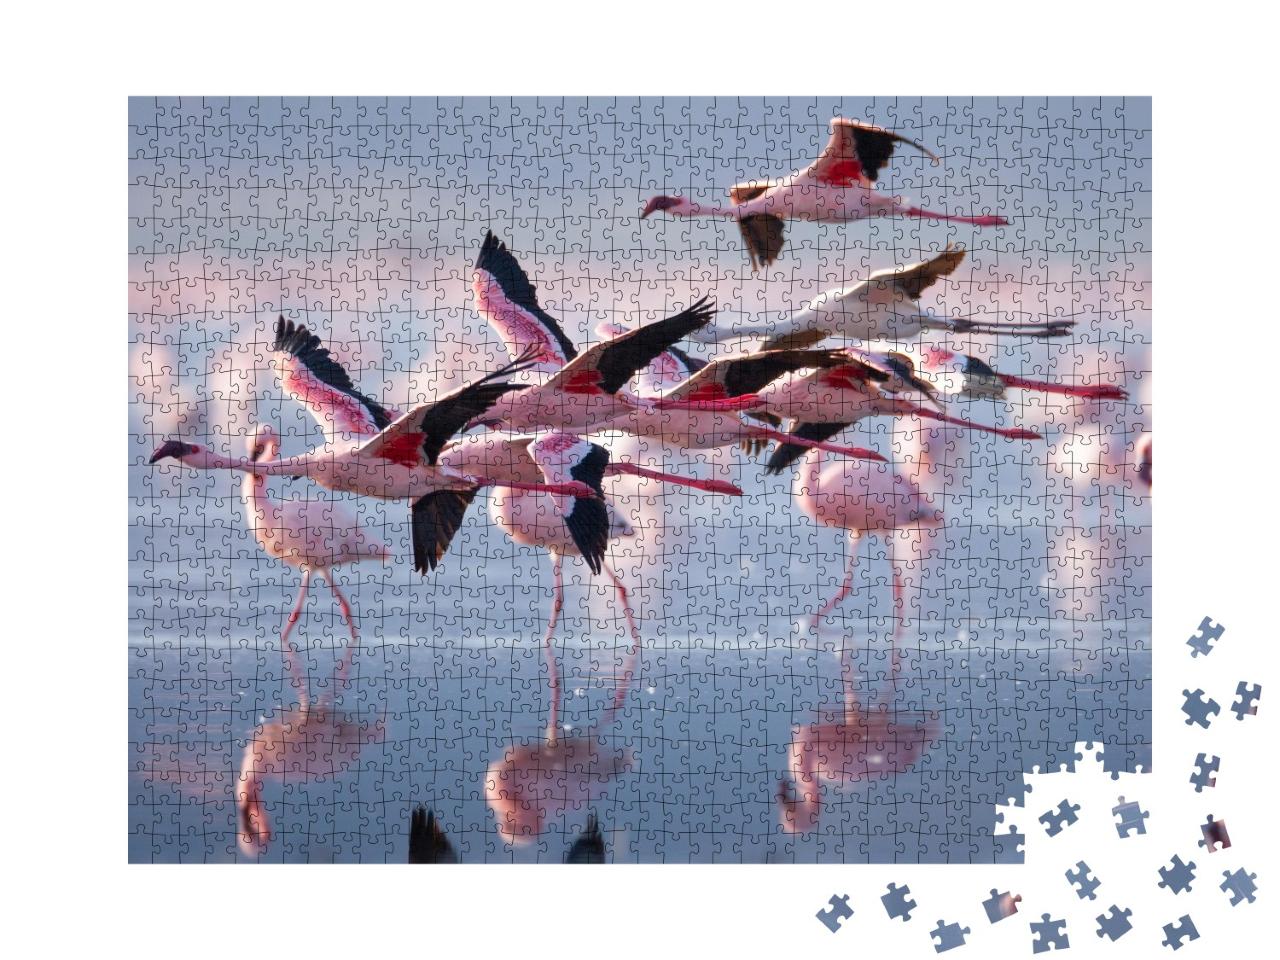 Puzzle de 1000 pièces « Groupe de flamants roses en vol »